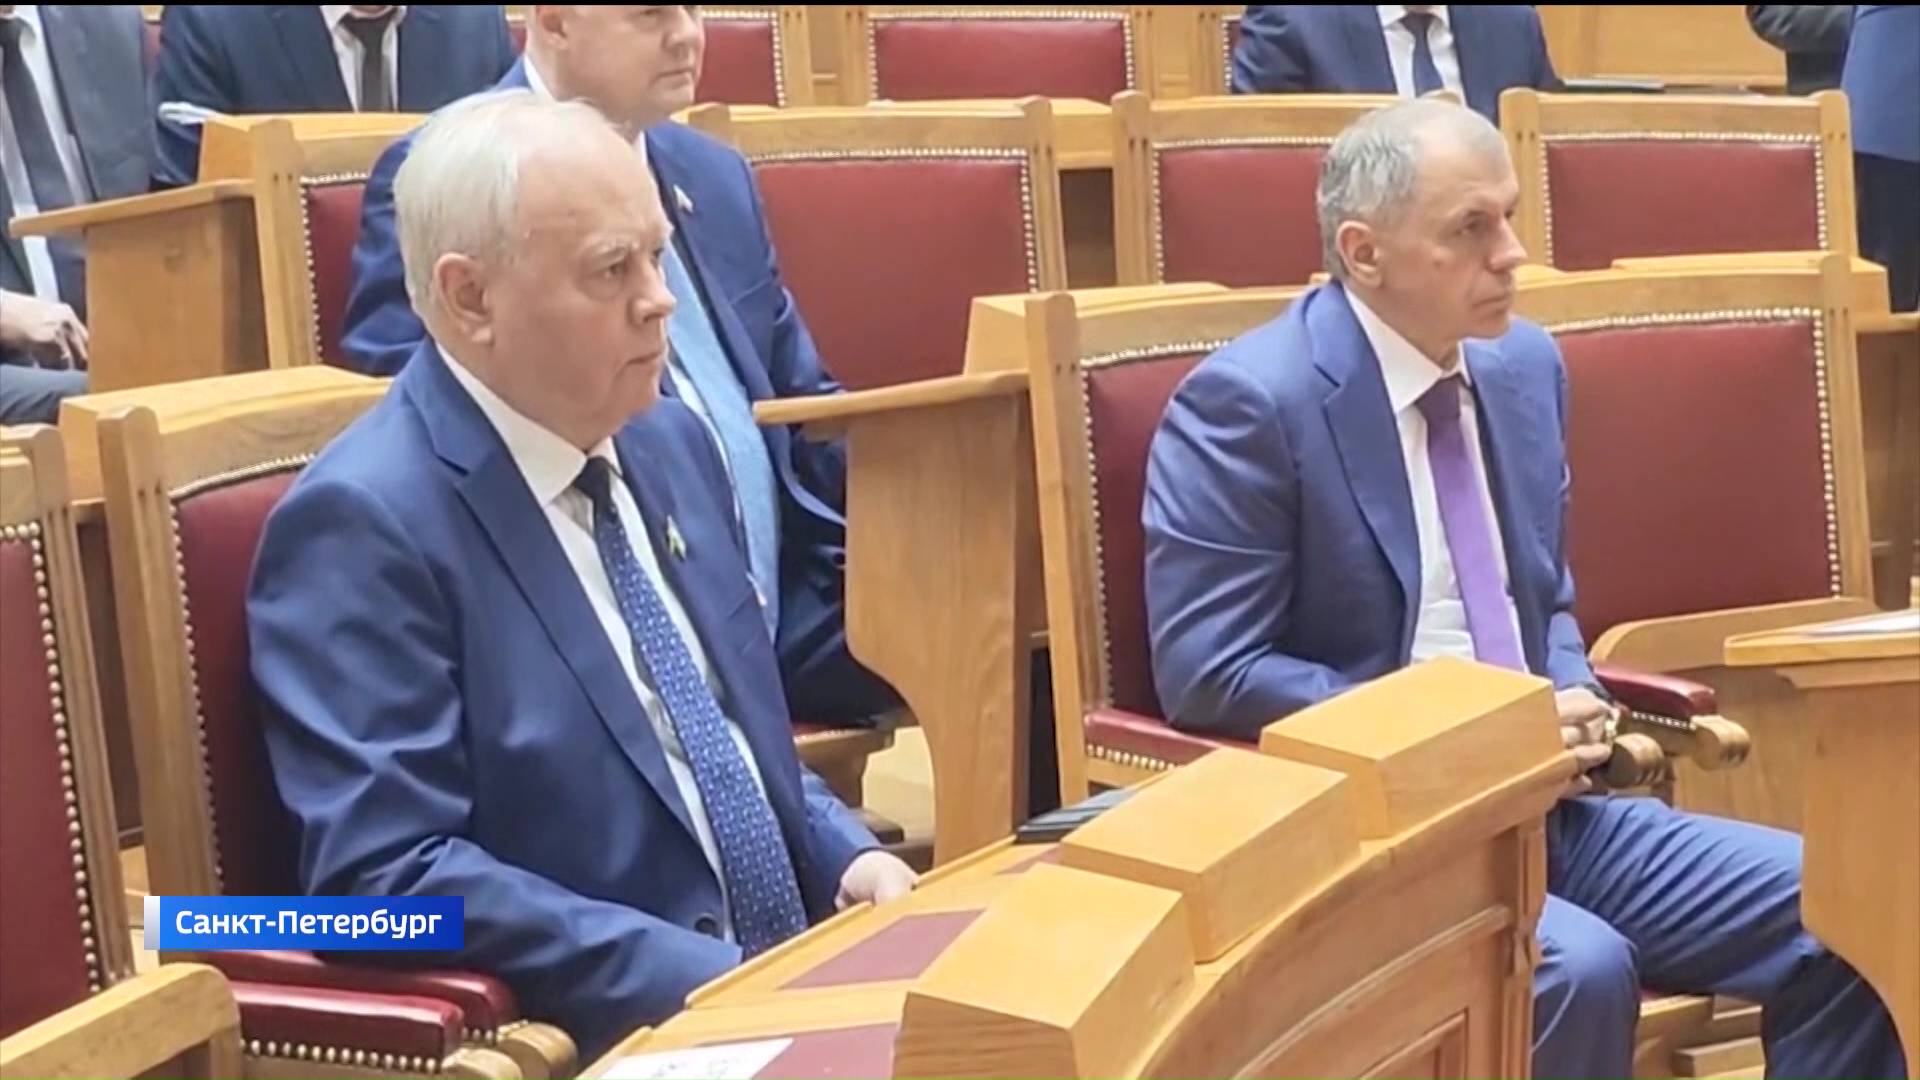 Госсобрание Башкирии подписало соглашения о сотрудничестве с Белгородской областной Думой и Народным Советом ДНР